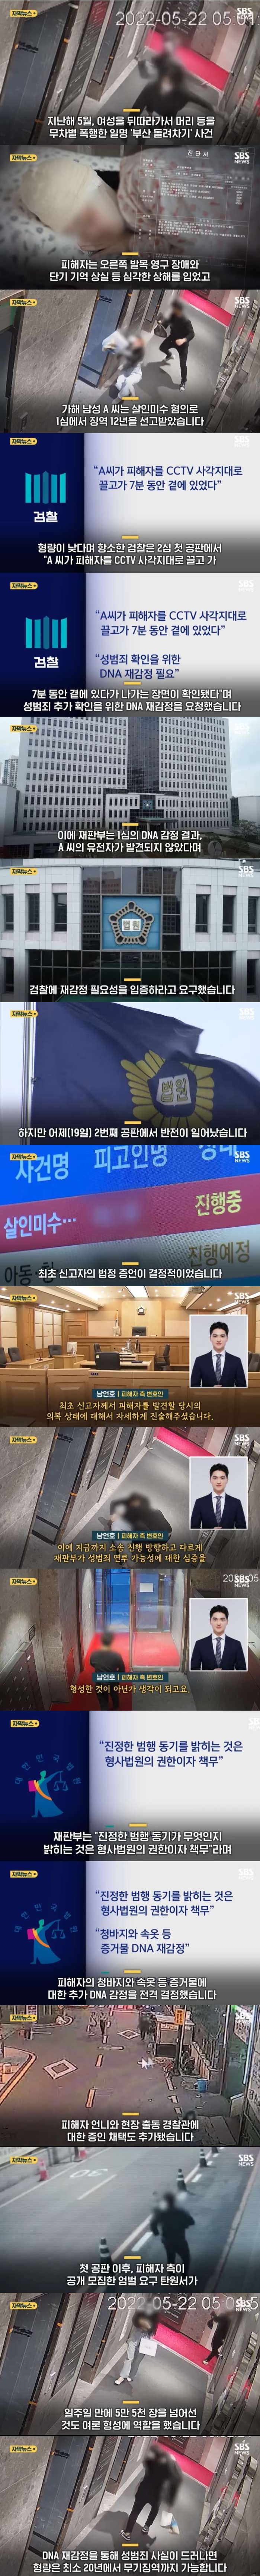 부산 돌려차기 사건 재판부 움직인 신고자 증언